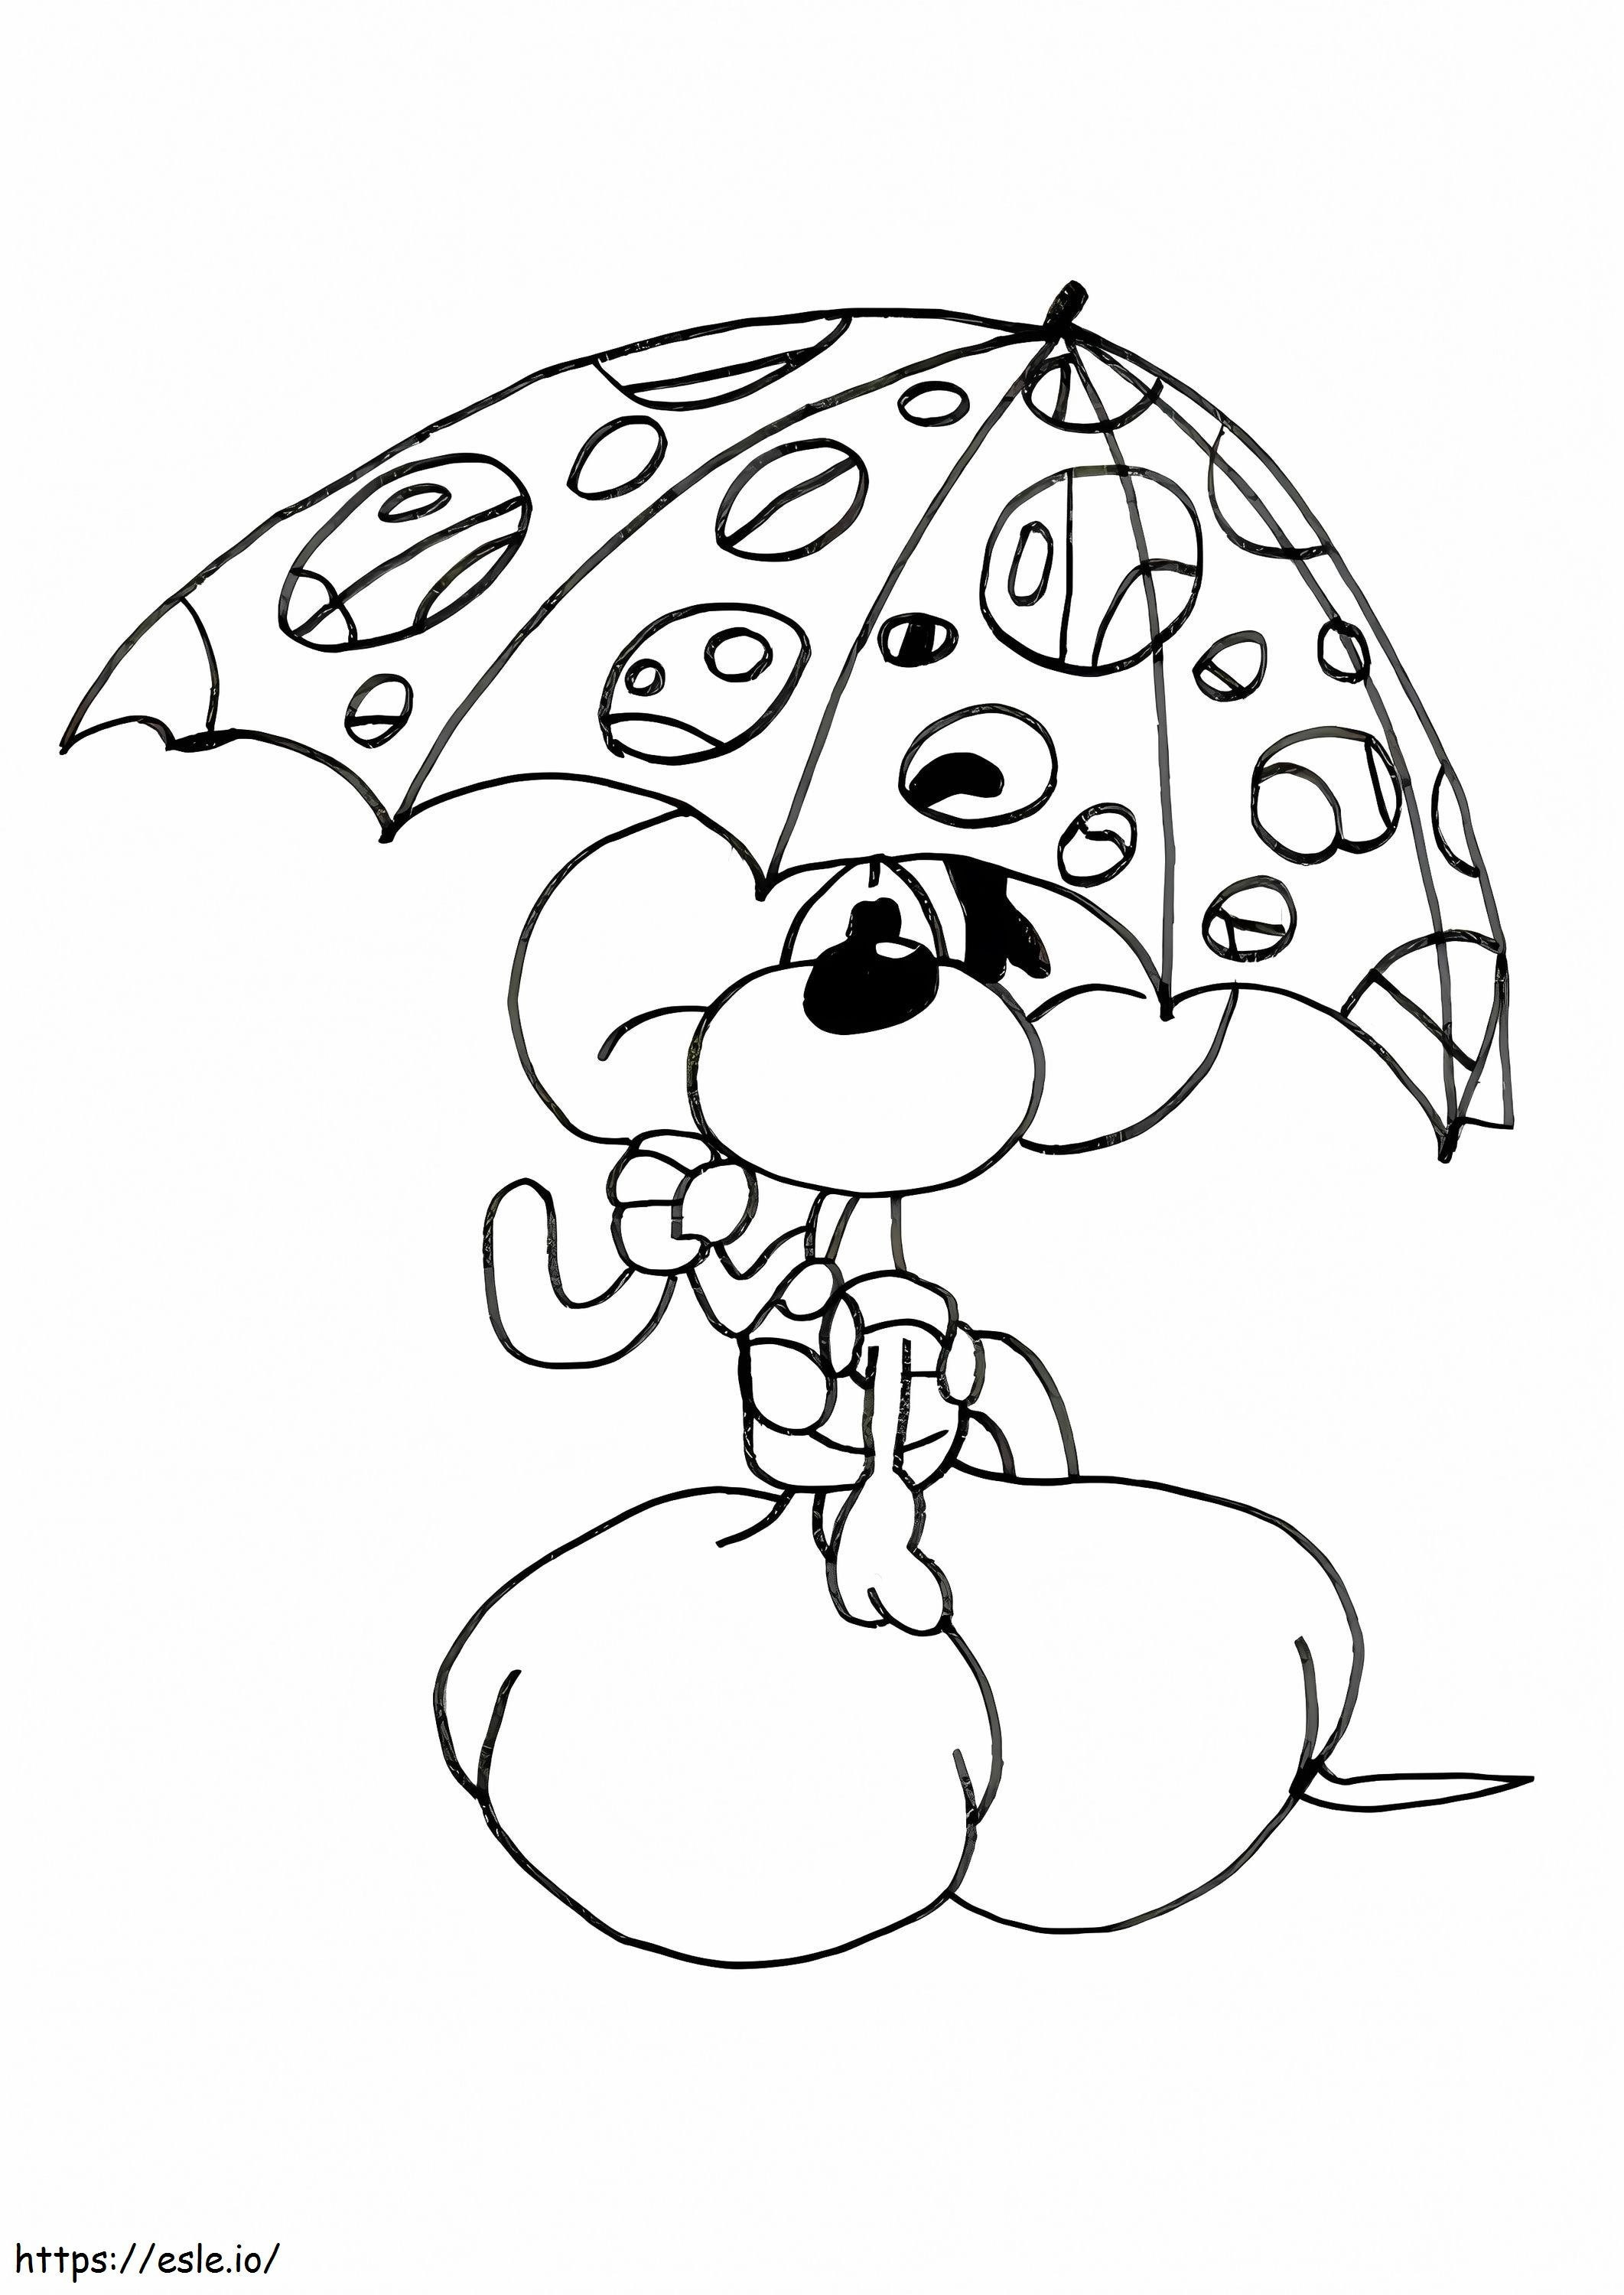 Diddl cu umbrelă de colorat